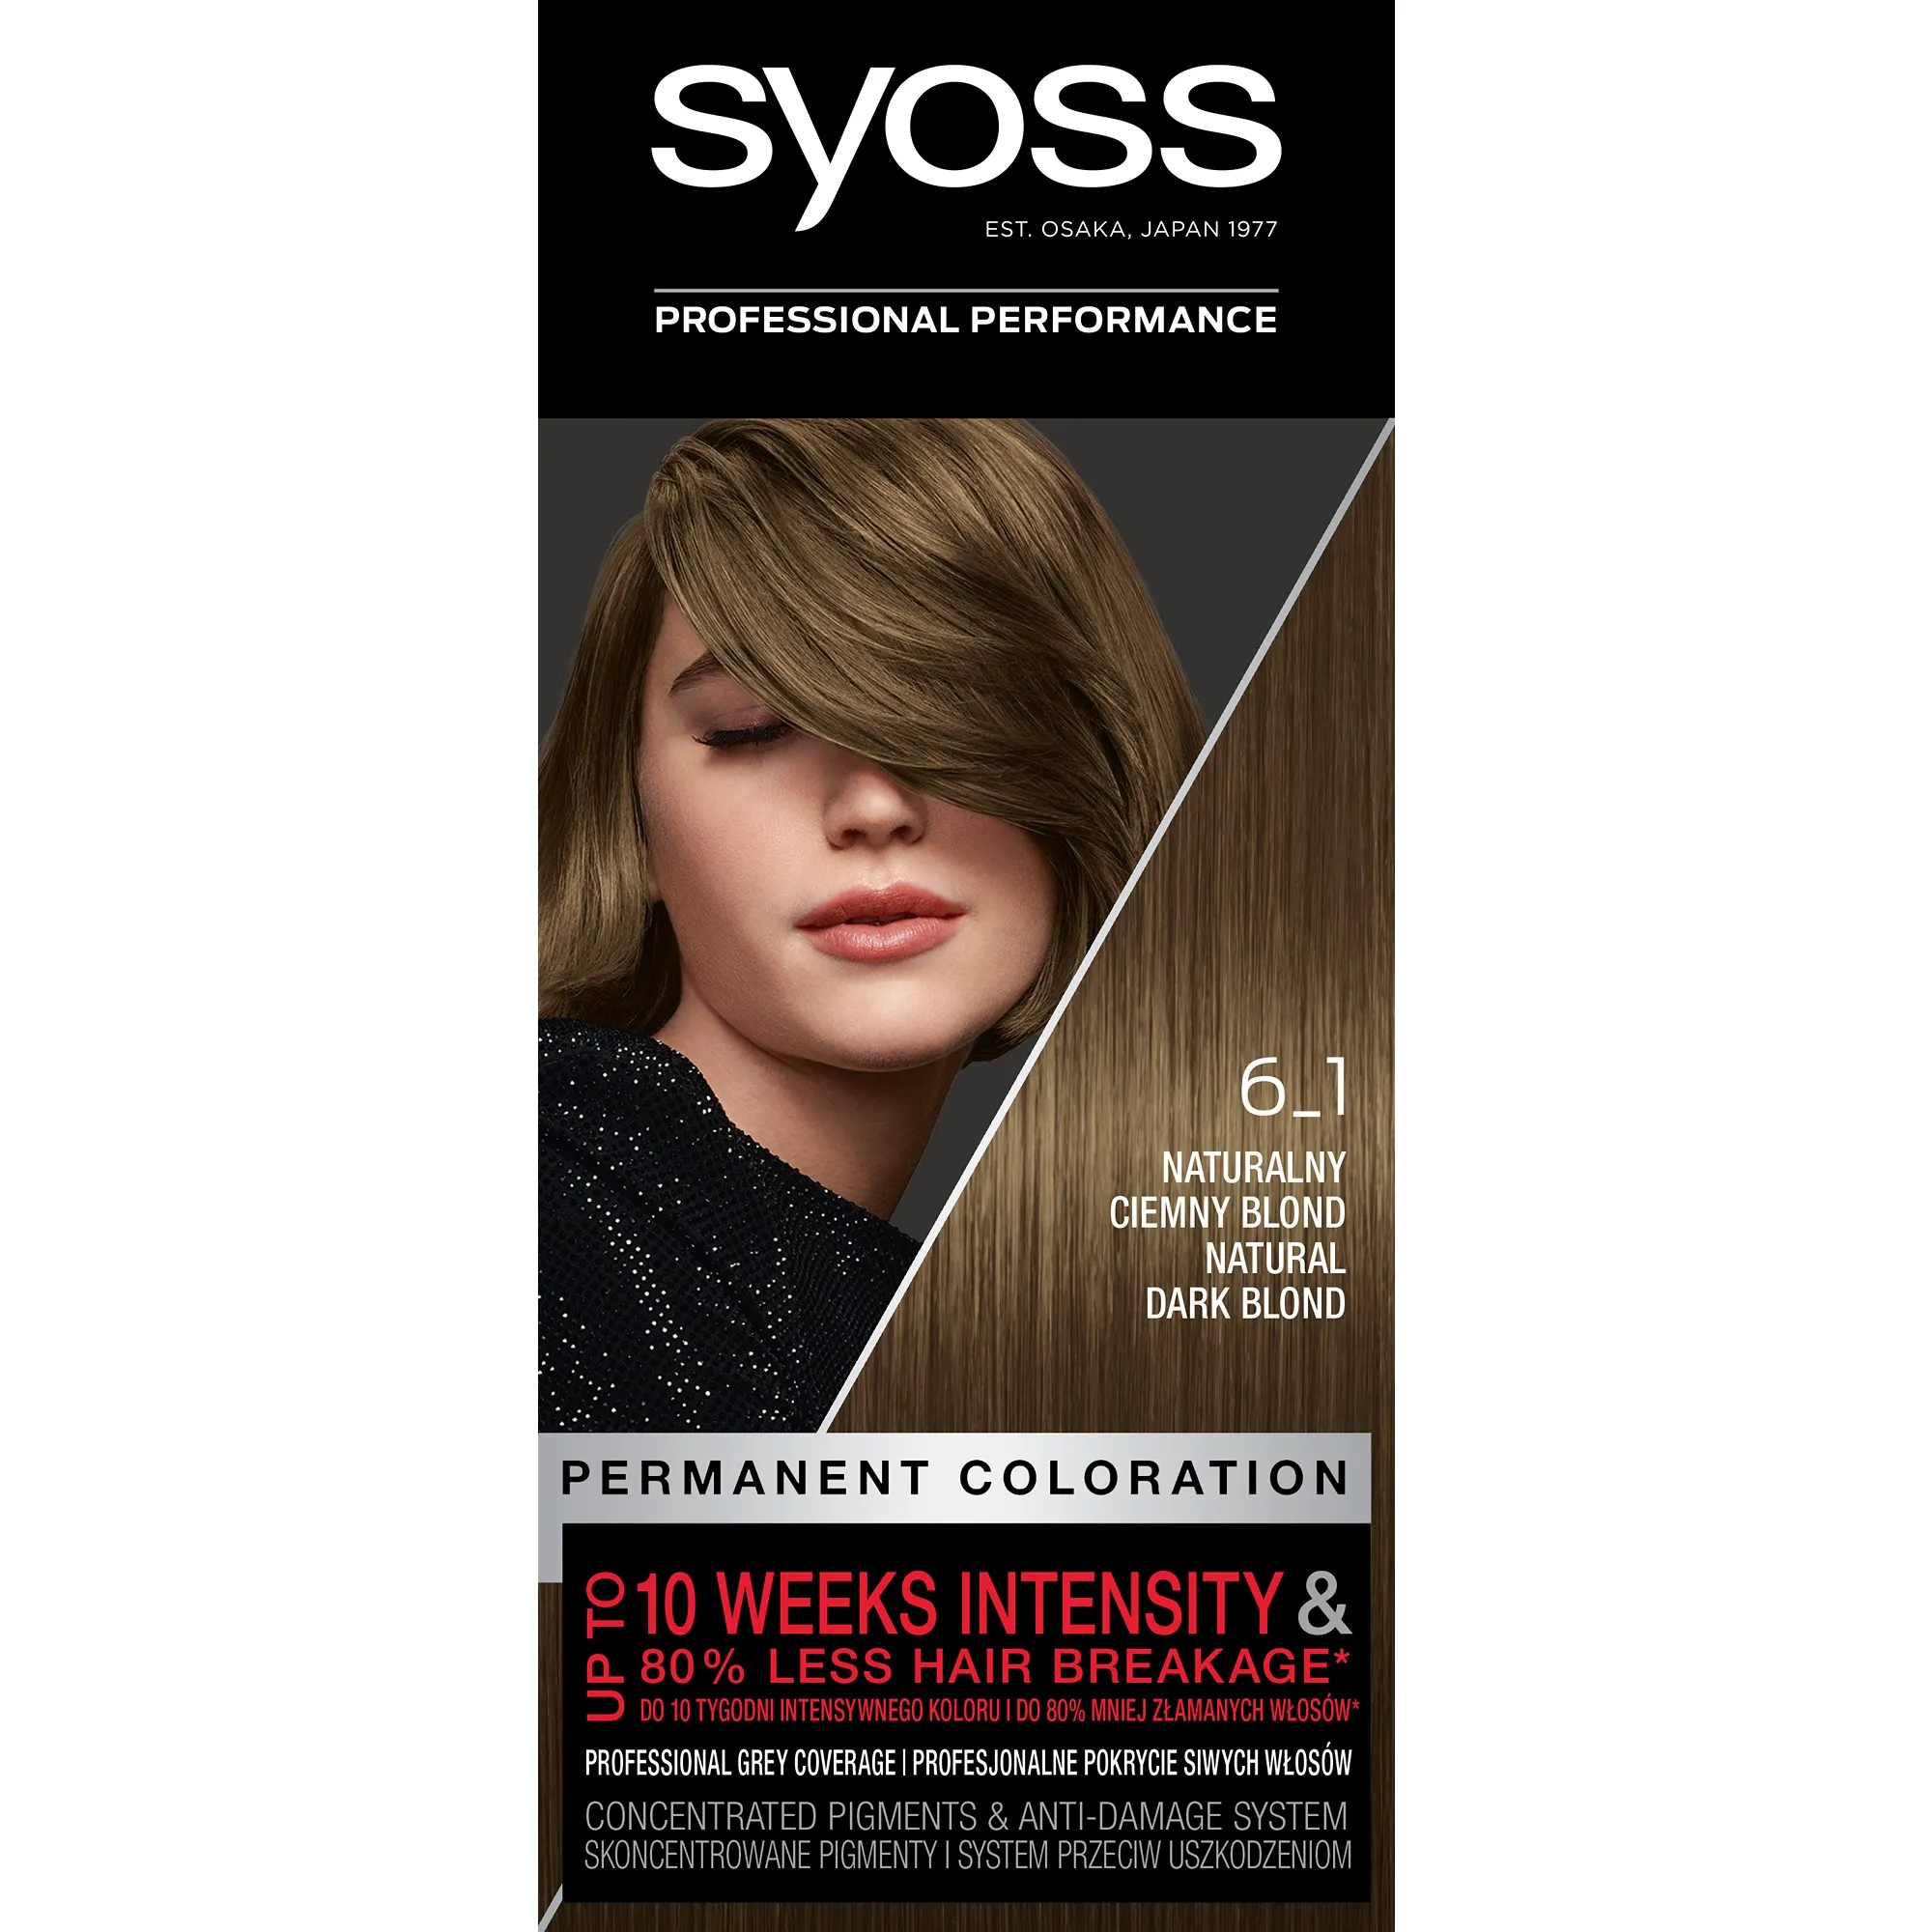 Syoss Permanent Coloration farba do włosów trwale koloryzująca 6-1 Naturalny Ciemny Blond, 1 szt.